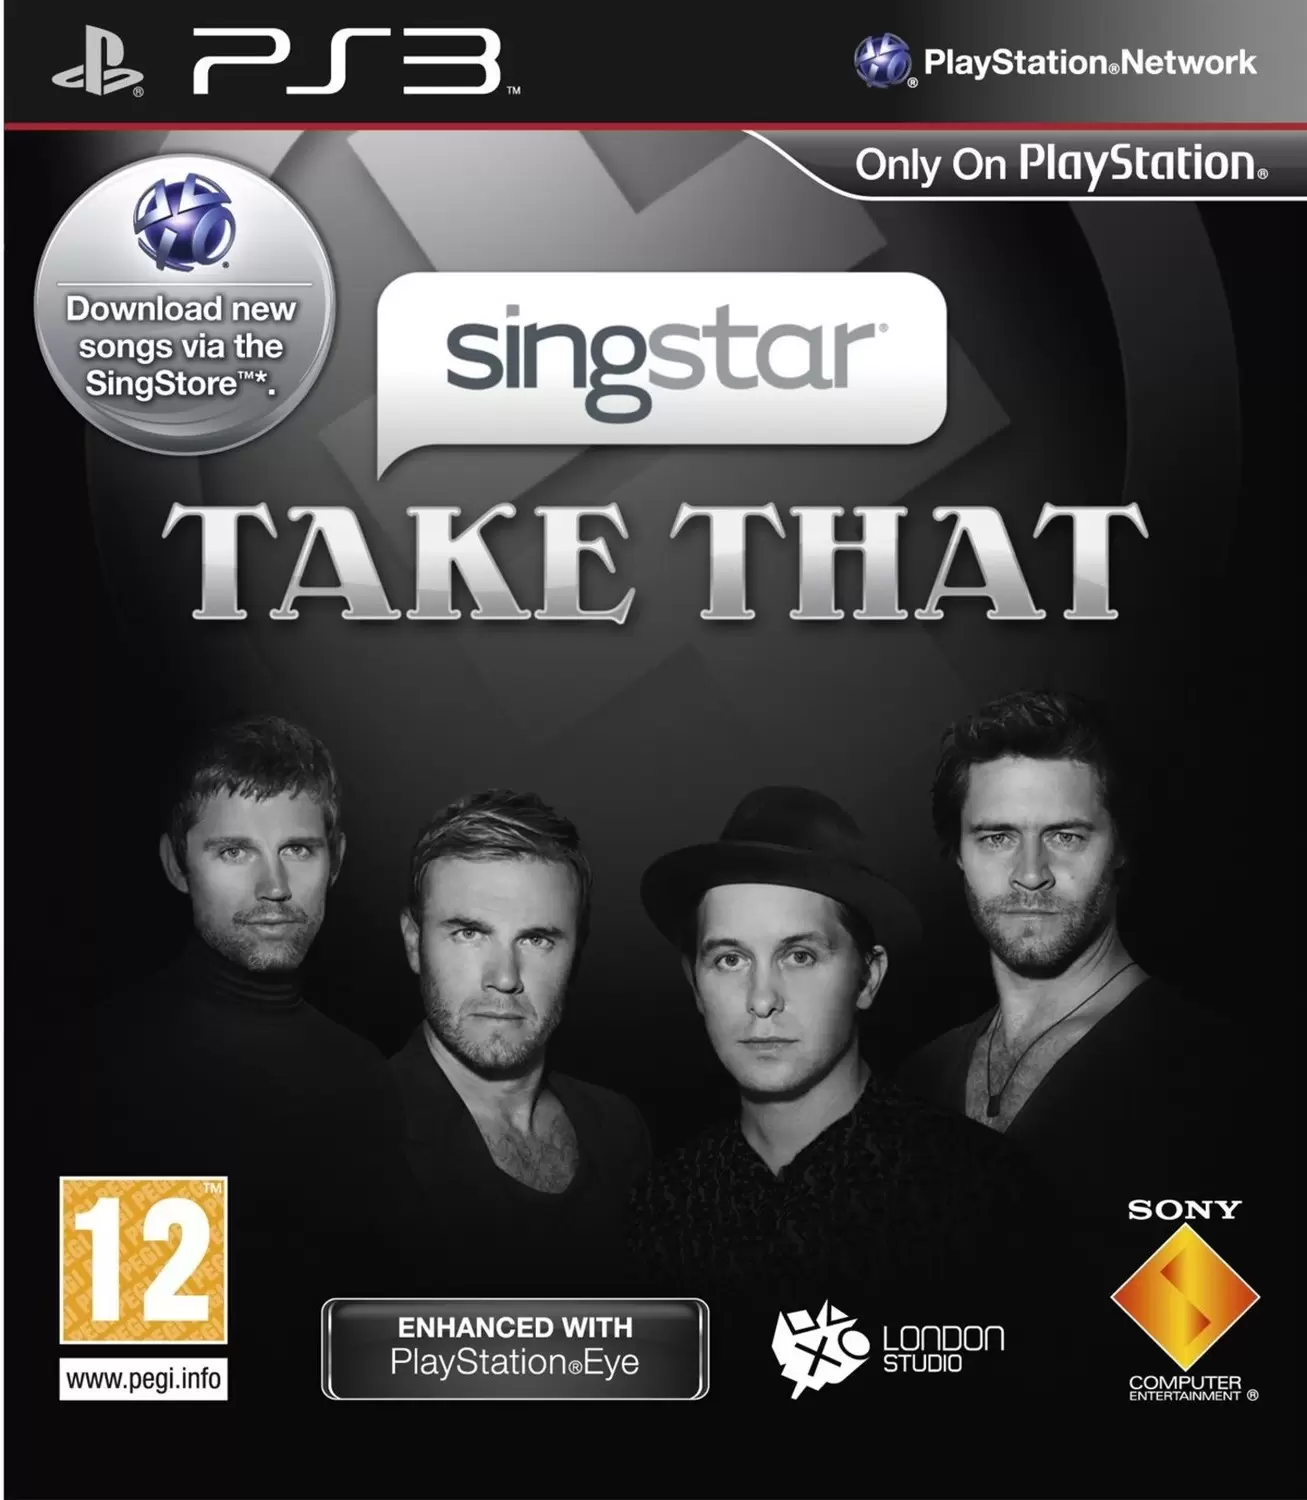 PS3 Games - SingStar Take That